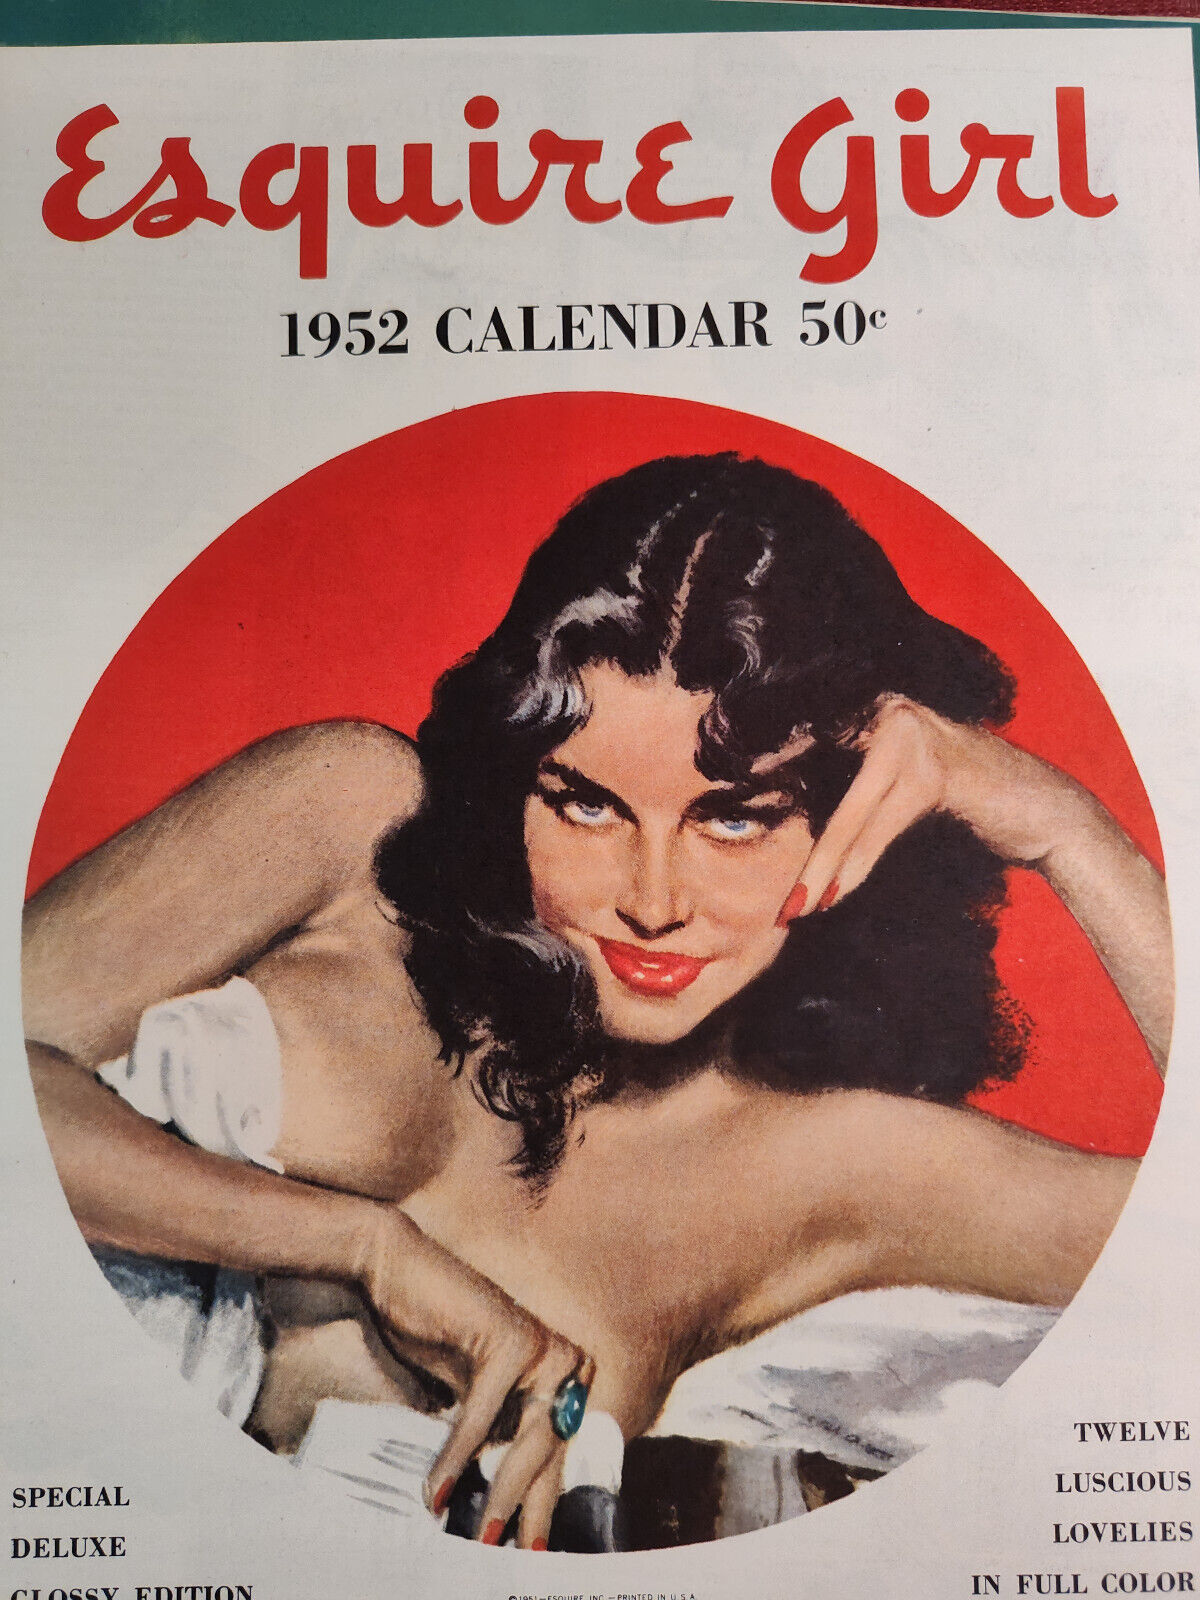 1951 Esquire Original Art Ad Advertisement for the Esquire Girl 1952 Calendar